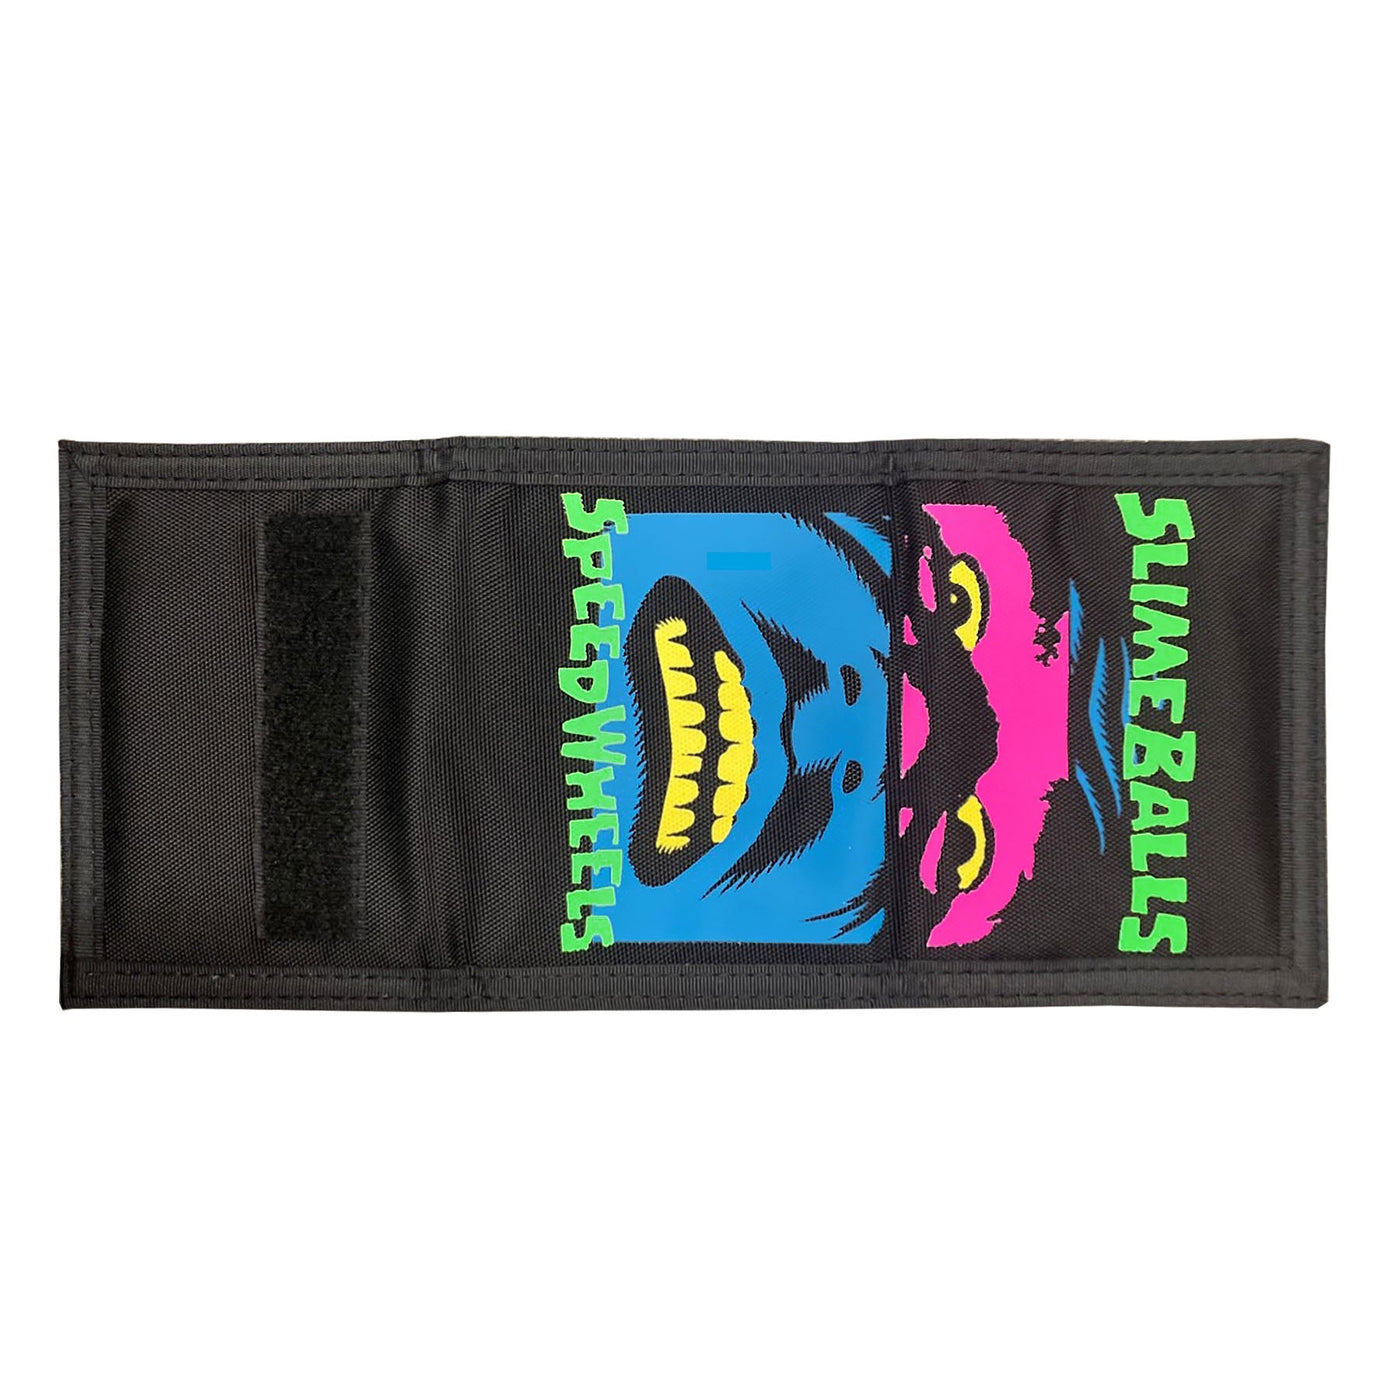 Slime Balls - Billetera Speed Freaks Tri-Fold Black - Lo Mejor De Slime Balls - Solo Por $22990! Compra Ahora En Wallride Skateshop